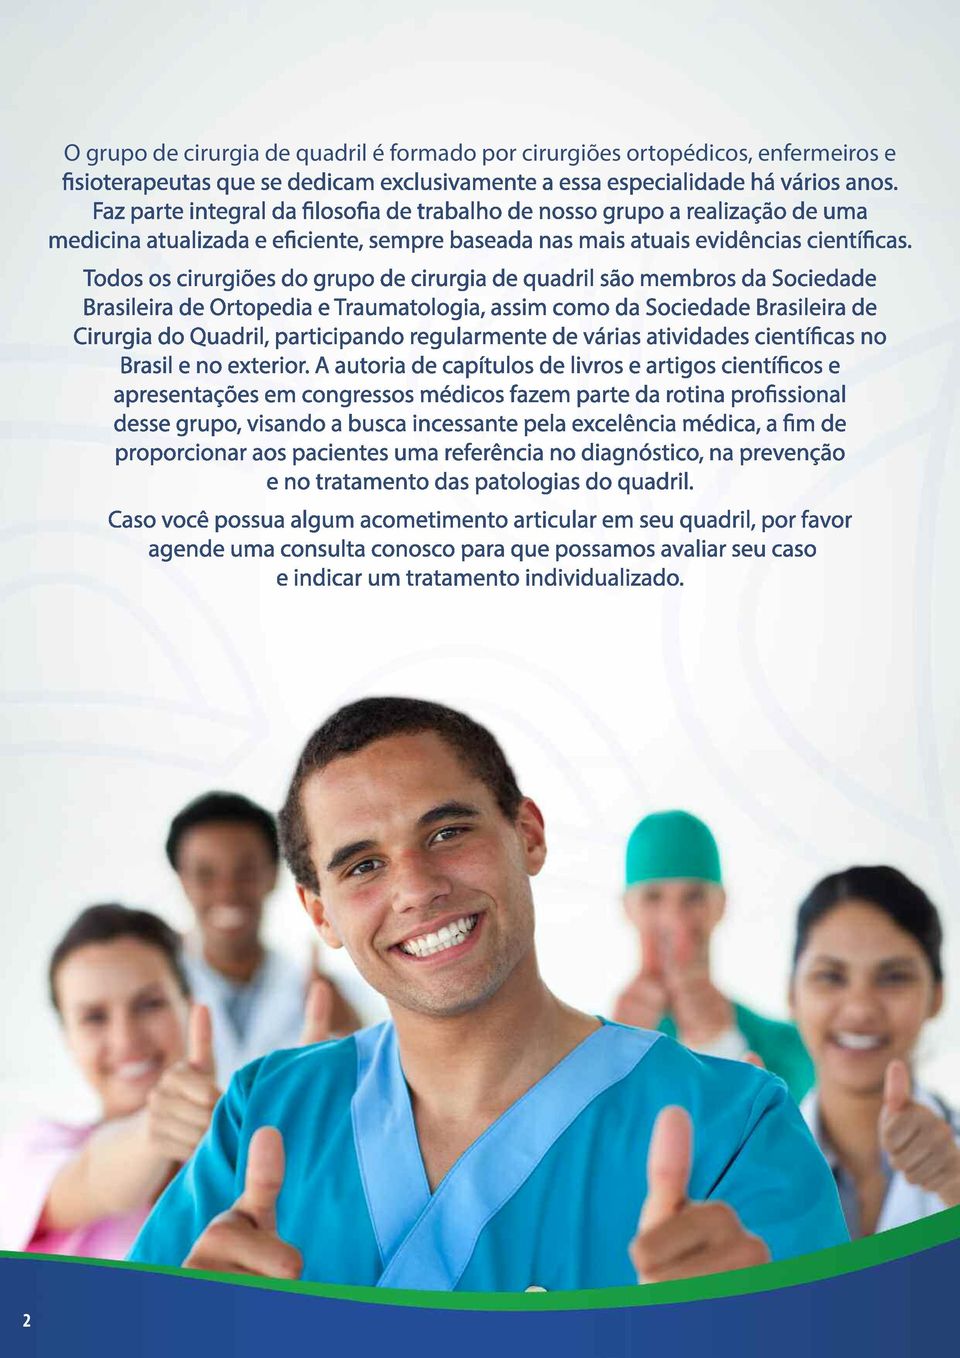 Todos os cirurgiões do grupo de cirurgia de quadril são membros da Sociedade Brasileira de Ortopedia e Traumatologia, assim como da Sociedade Brasileira de Cirurgia do Quadril, participando